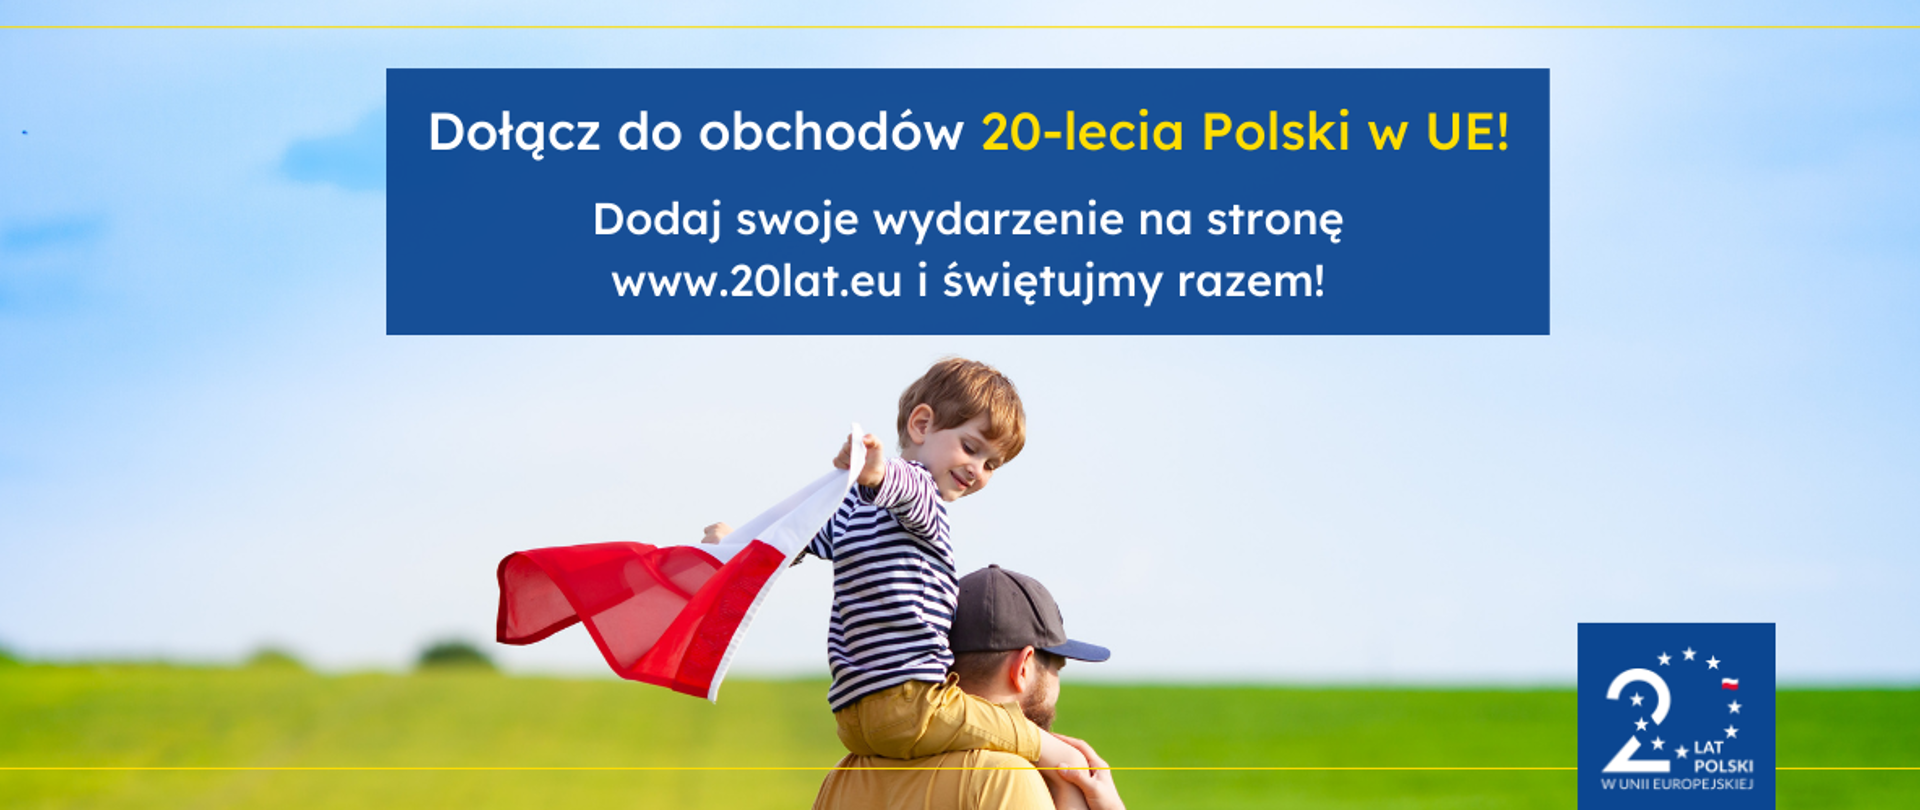 Mężczyzna trzyma chłopca na barana, chłopiec trzyma flagę Polski